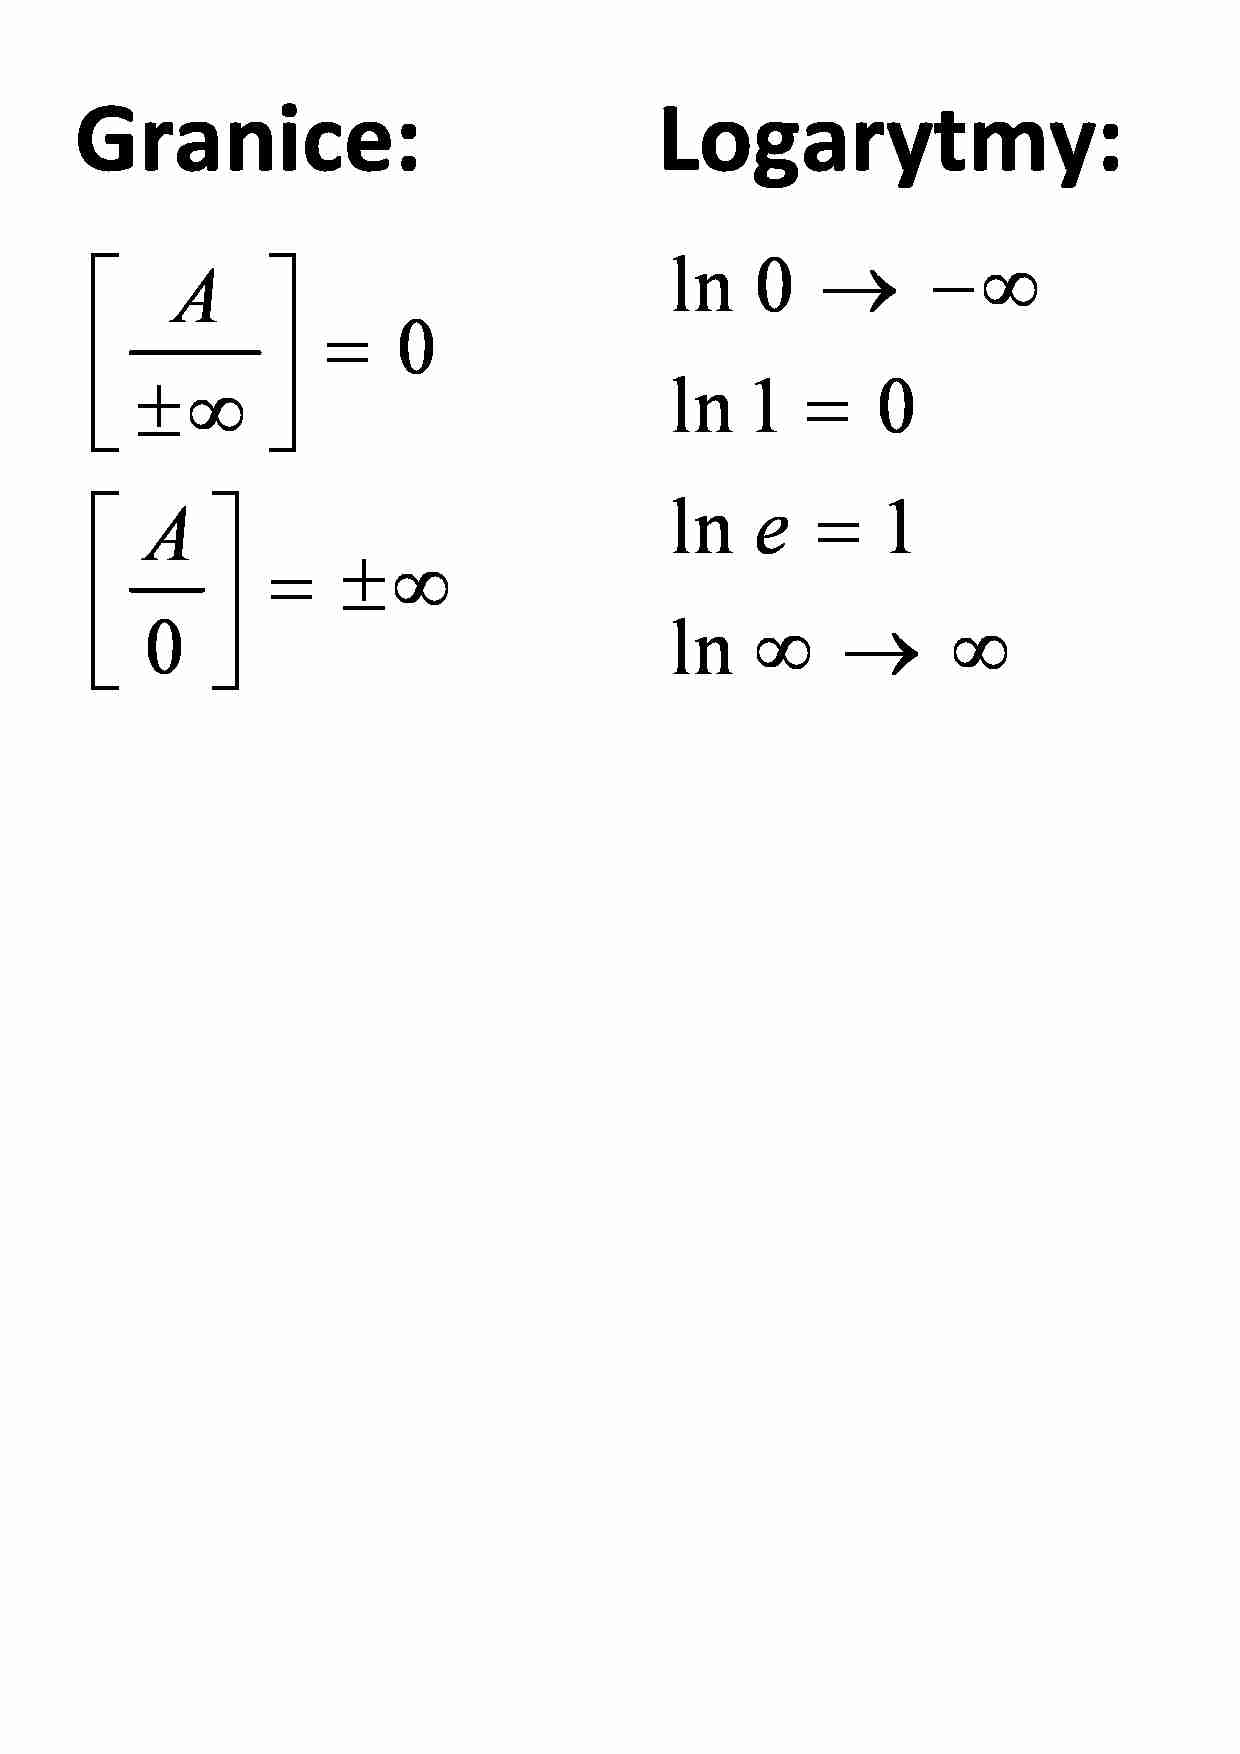 Granice logarytmy - omówienie - strona 1